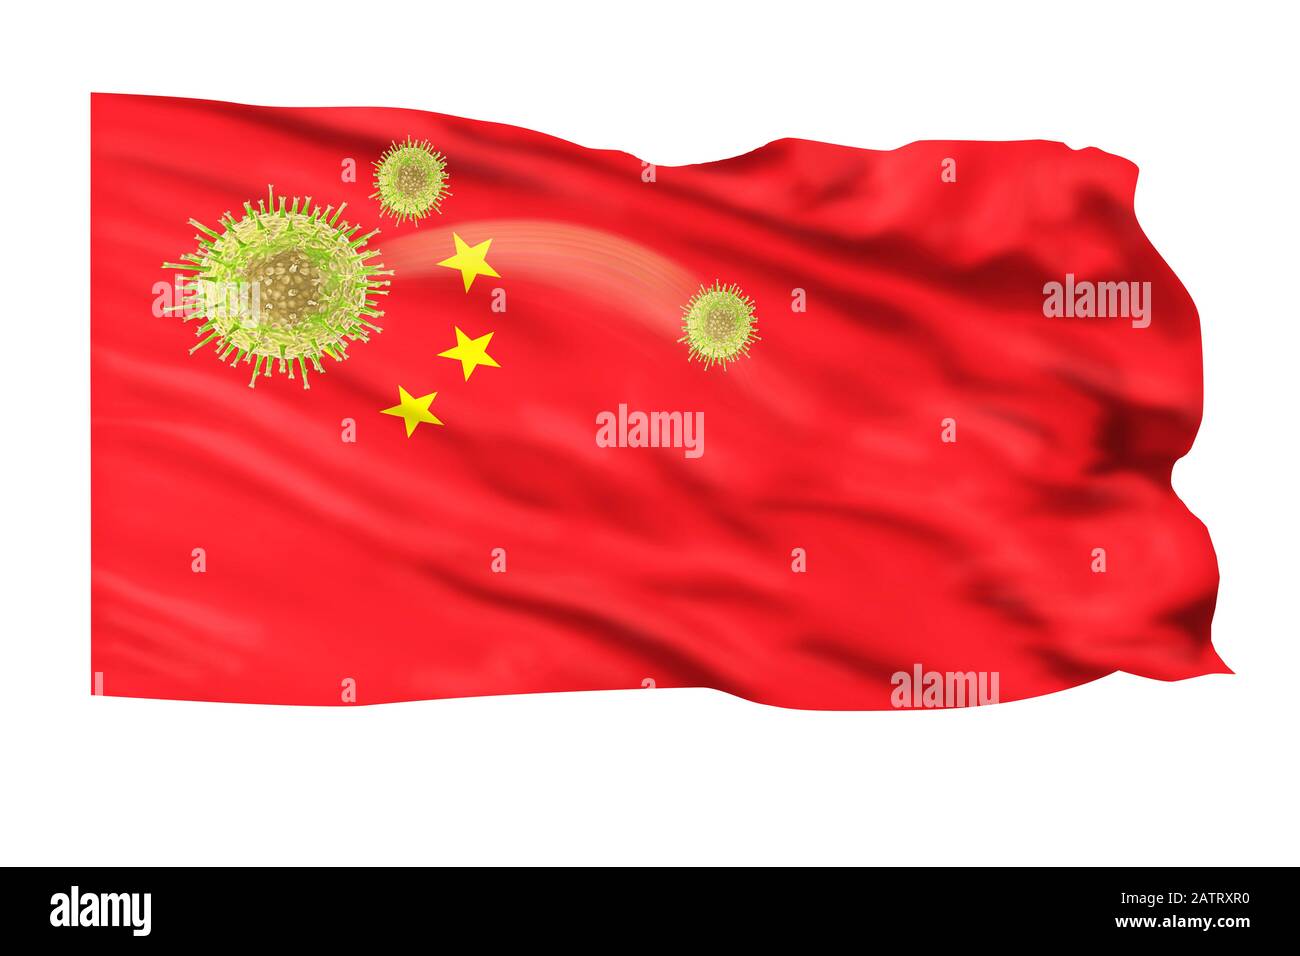 China Wuhan ilustración de brotes de virus con bandera China. Foto de stock